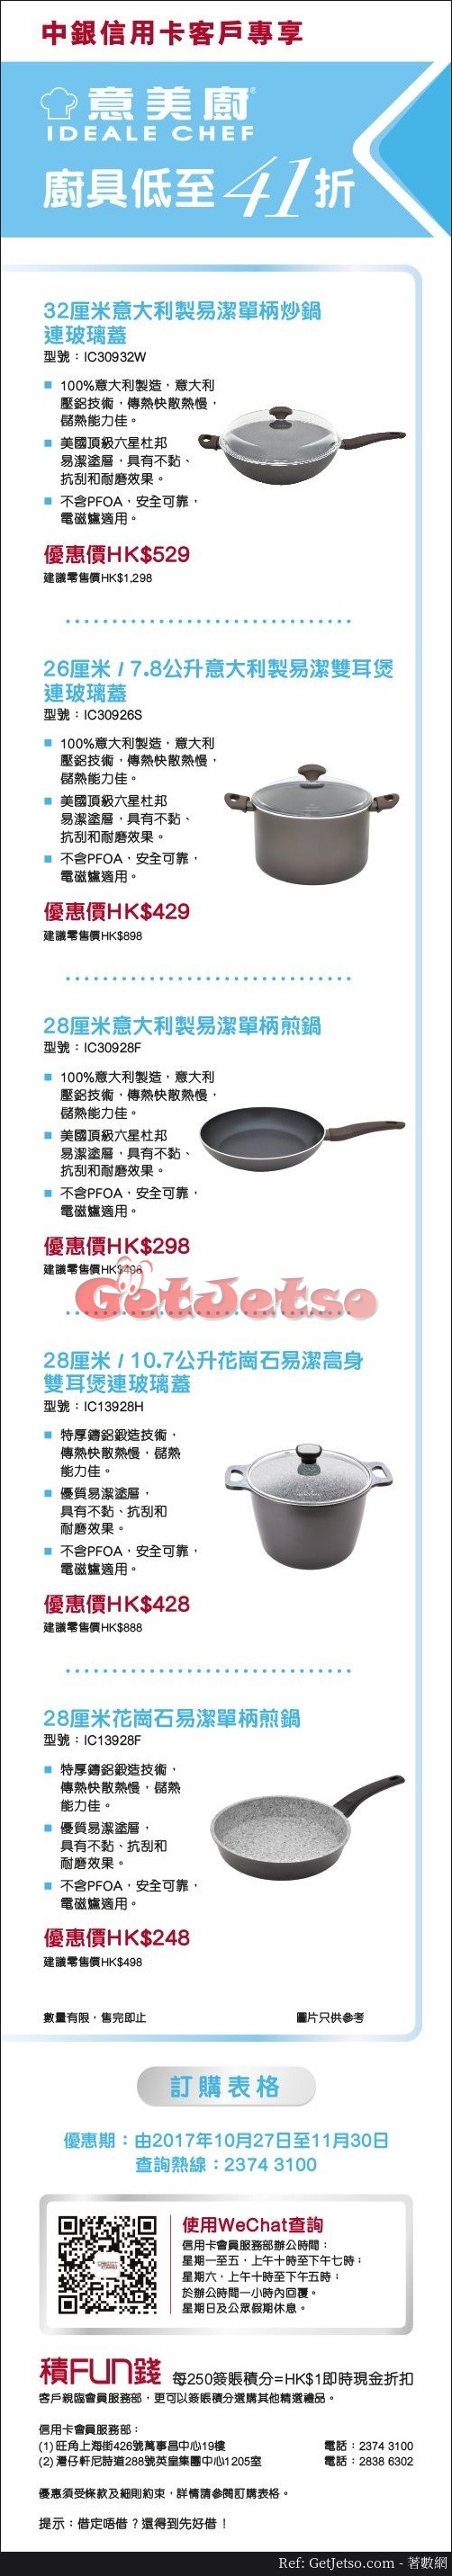 中銀信用卡享意美廚廚具低至41折減價優惠(至17年11月30日)圖片1